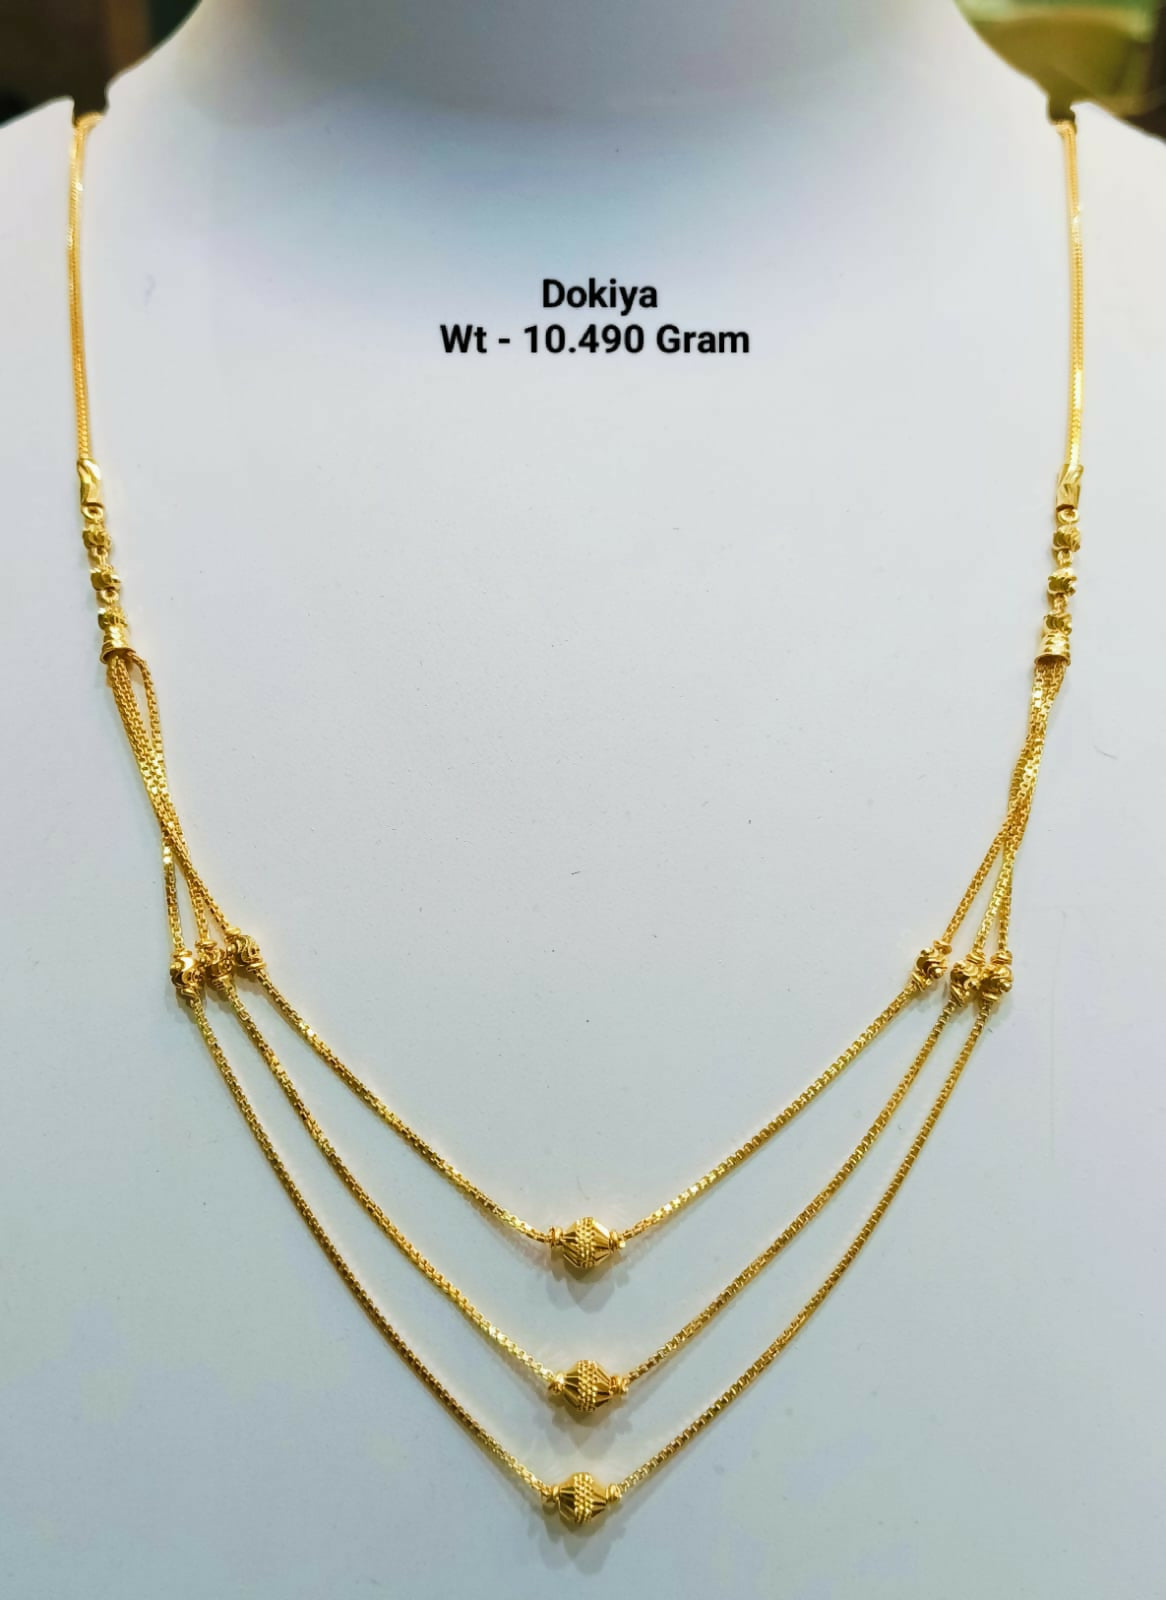 Dokiya Chain